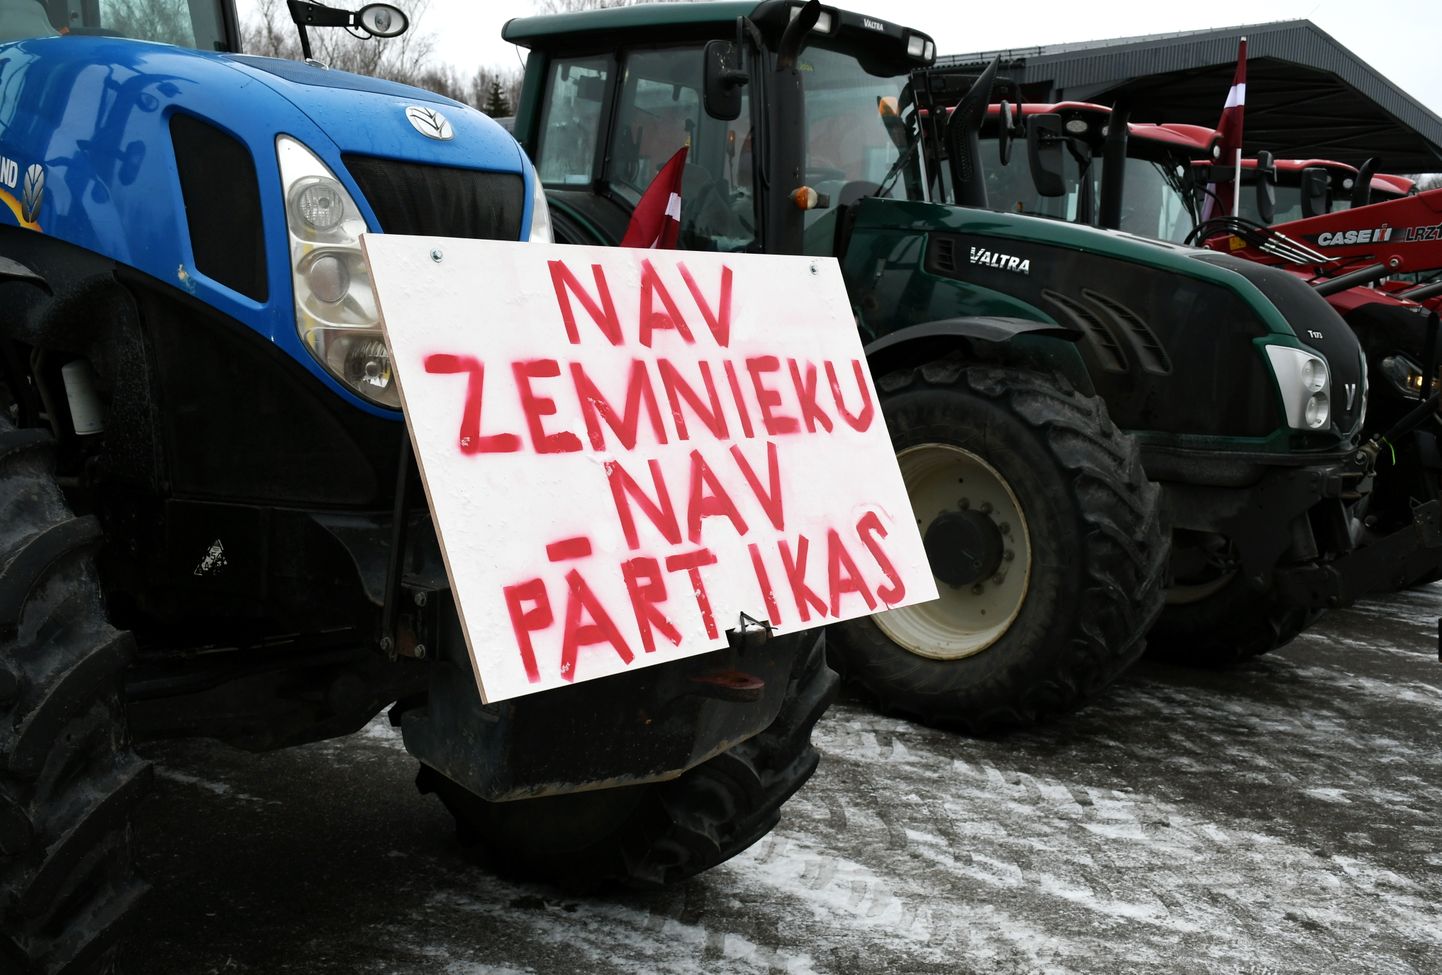 Lauksaimnieku protests Daugavpilī ar mērķi panākt Krievijas un Baltkrievijas pārtikas produktu tūlītēja importa aizliegumu bez pārejas perioda, PVN samazinātās likmes 5% apmērā atjaunošanu Latvijai raksturīgajiem augļiem, ogām dārzeņiem, plašāku pieeju apdrošināšanas un apgrozāmo līdzekļu programmām, kā arī atteikšanos no nacionāla līmeņa zemes apgrūtinājumiem vai citiem zemes lietošanas ierobežojumiem.